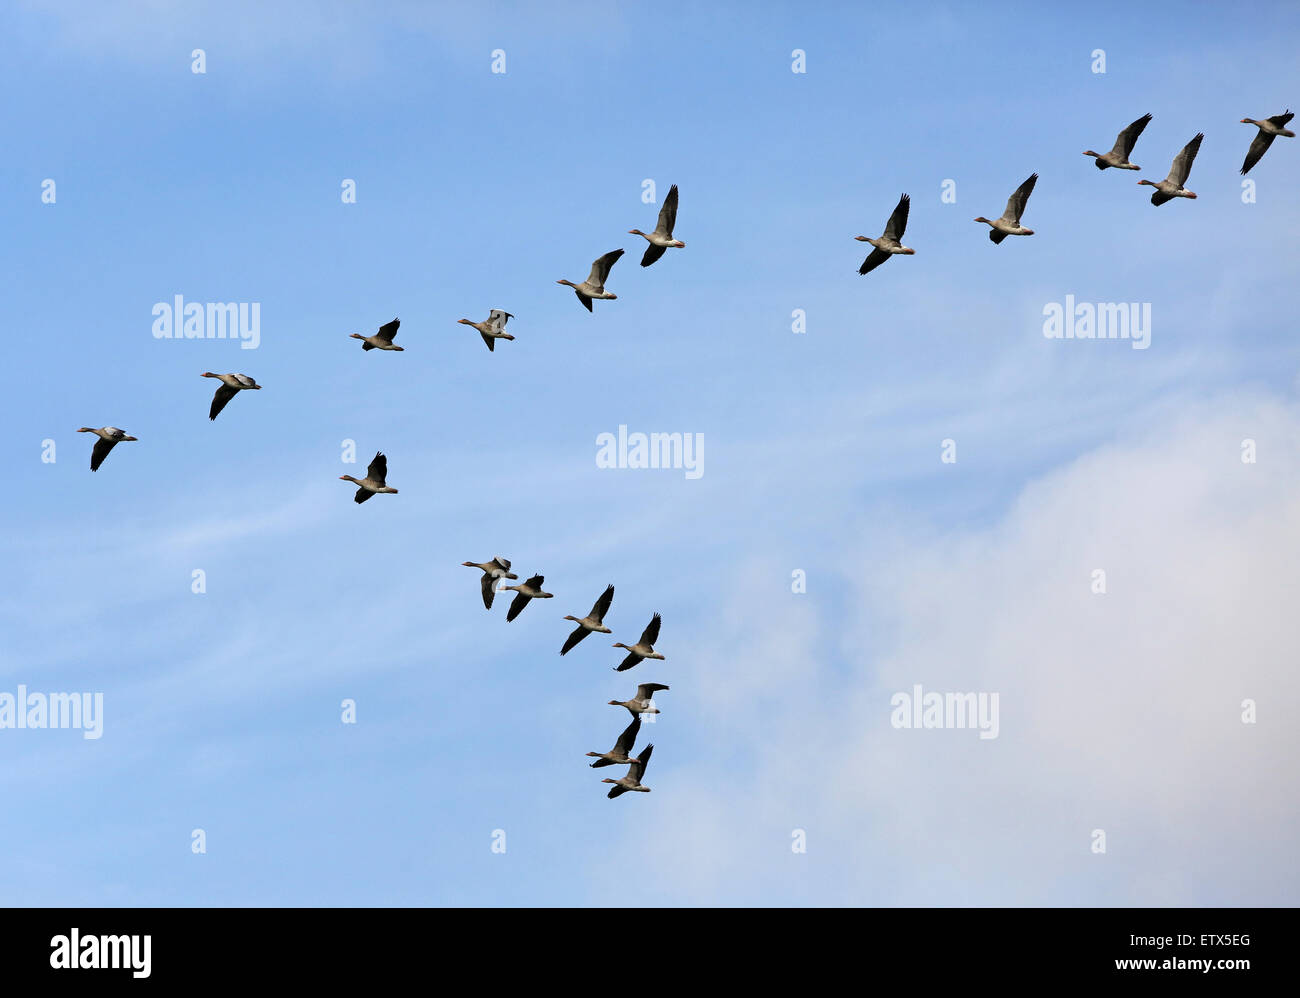 Görlsdorf, Germany, Graugaense flying in formation Stock Photo